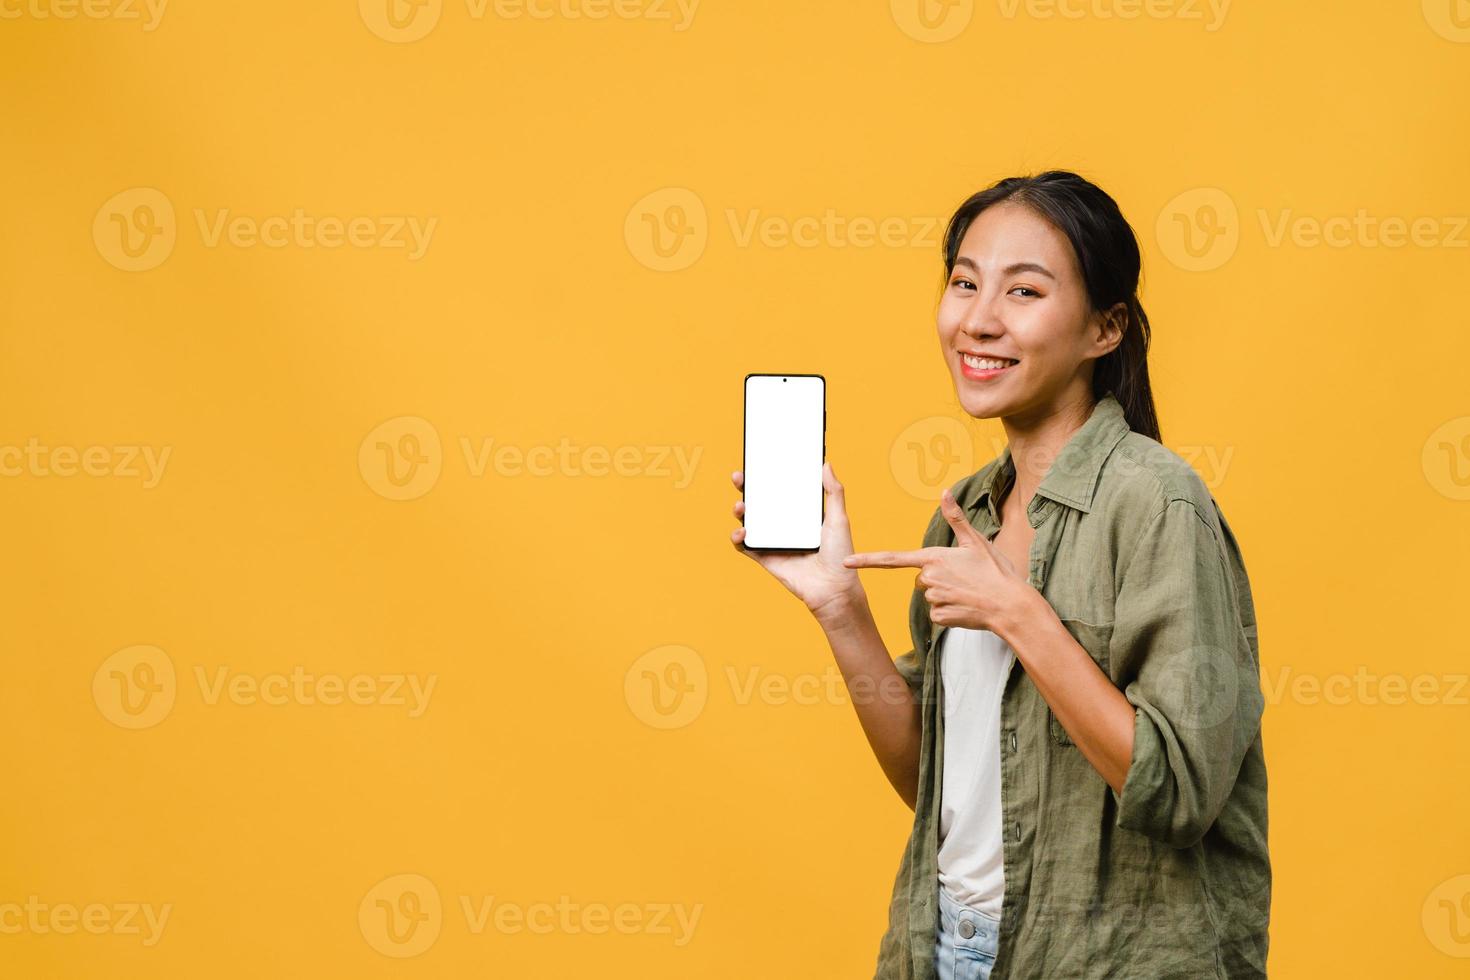 une jeune femme asiatique montre un écran de smartphone vide avec une expression positive, sourit largement, vêtue de vêtements décontractés, se sentant heureuse sur fond jaune. téléphone portable avec écran blanc en main féminine. photo